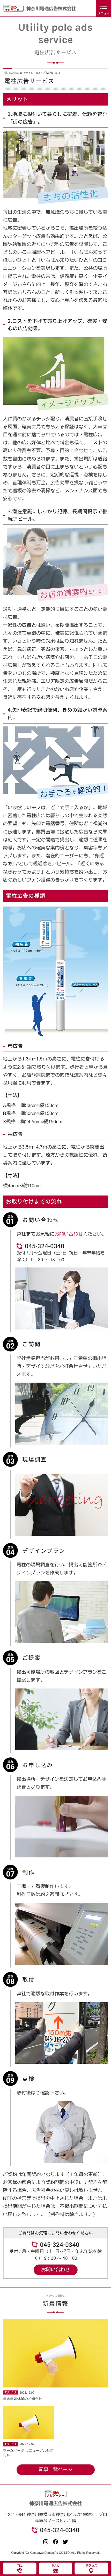 [神奈川電通広告/ 広告業] 電柱広告サービスページ